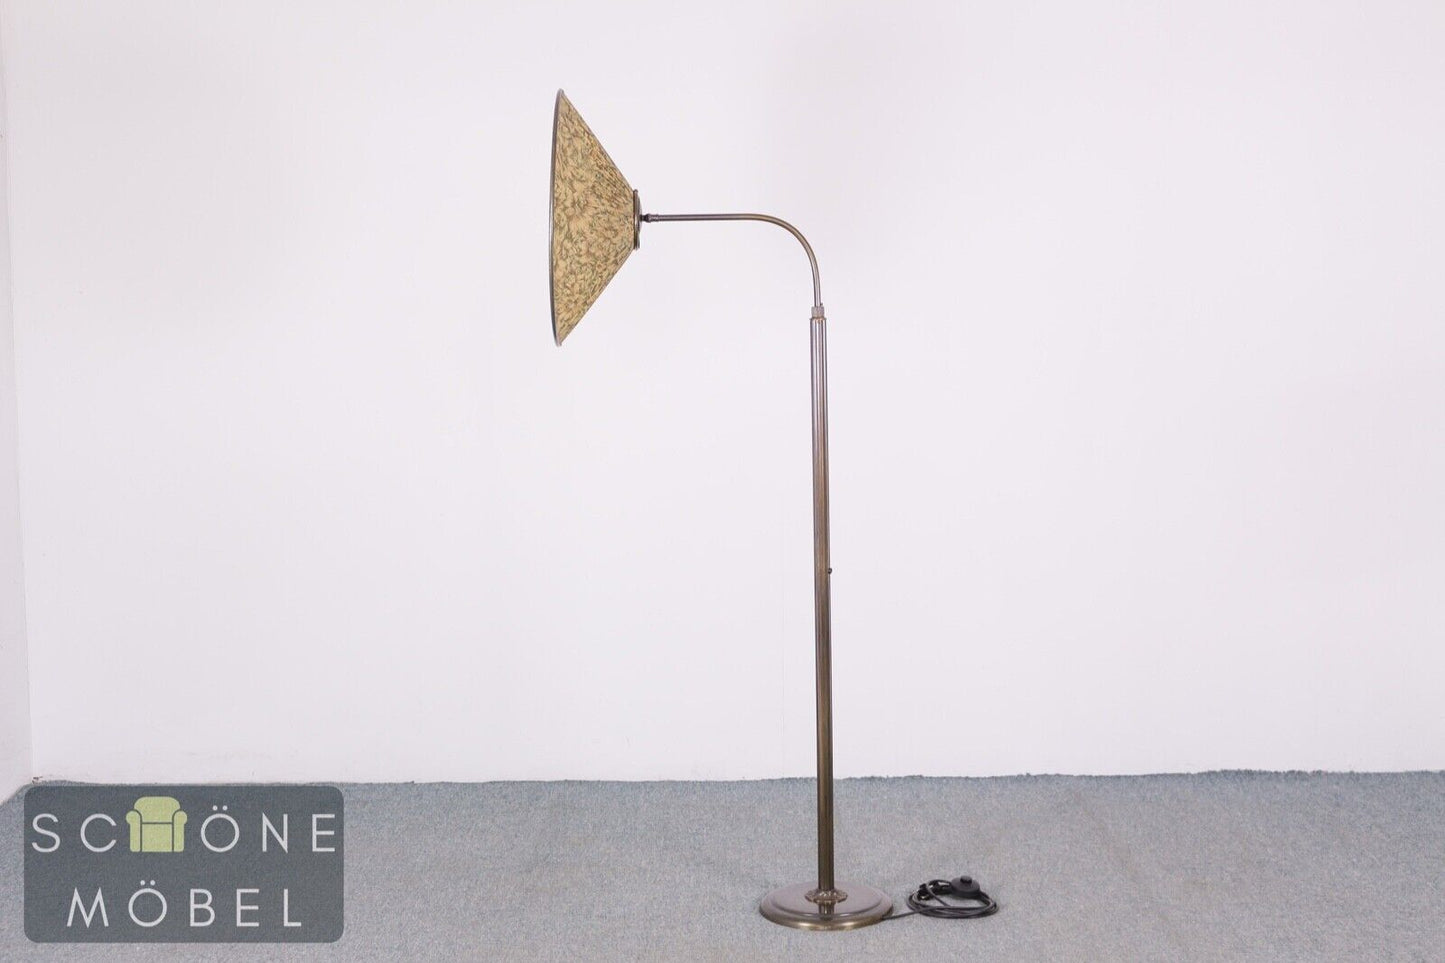 Schöne Antik Stil Stehlampe Lampenschirm Lampe E27 Fassung Schalter Messing